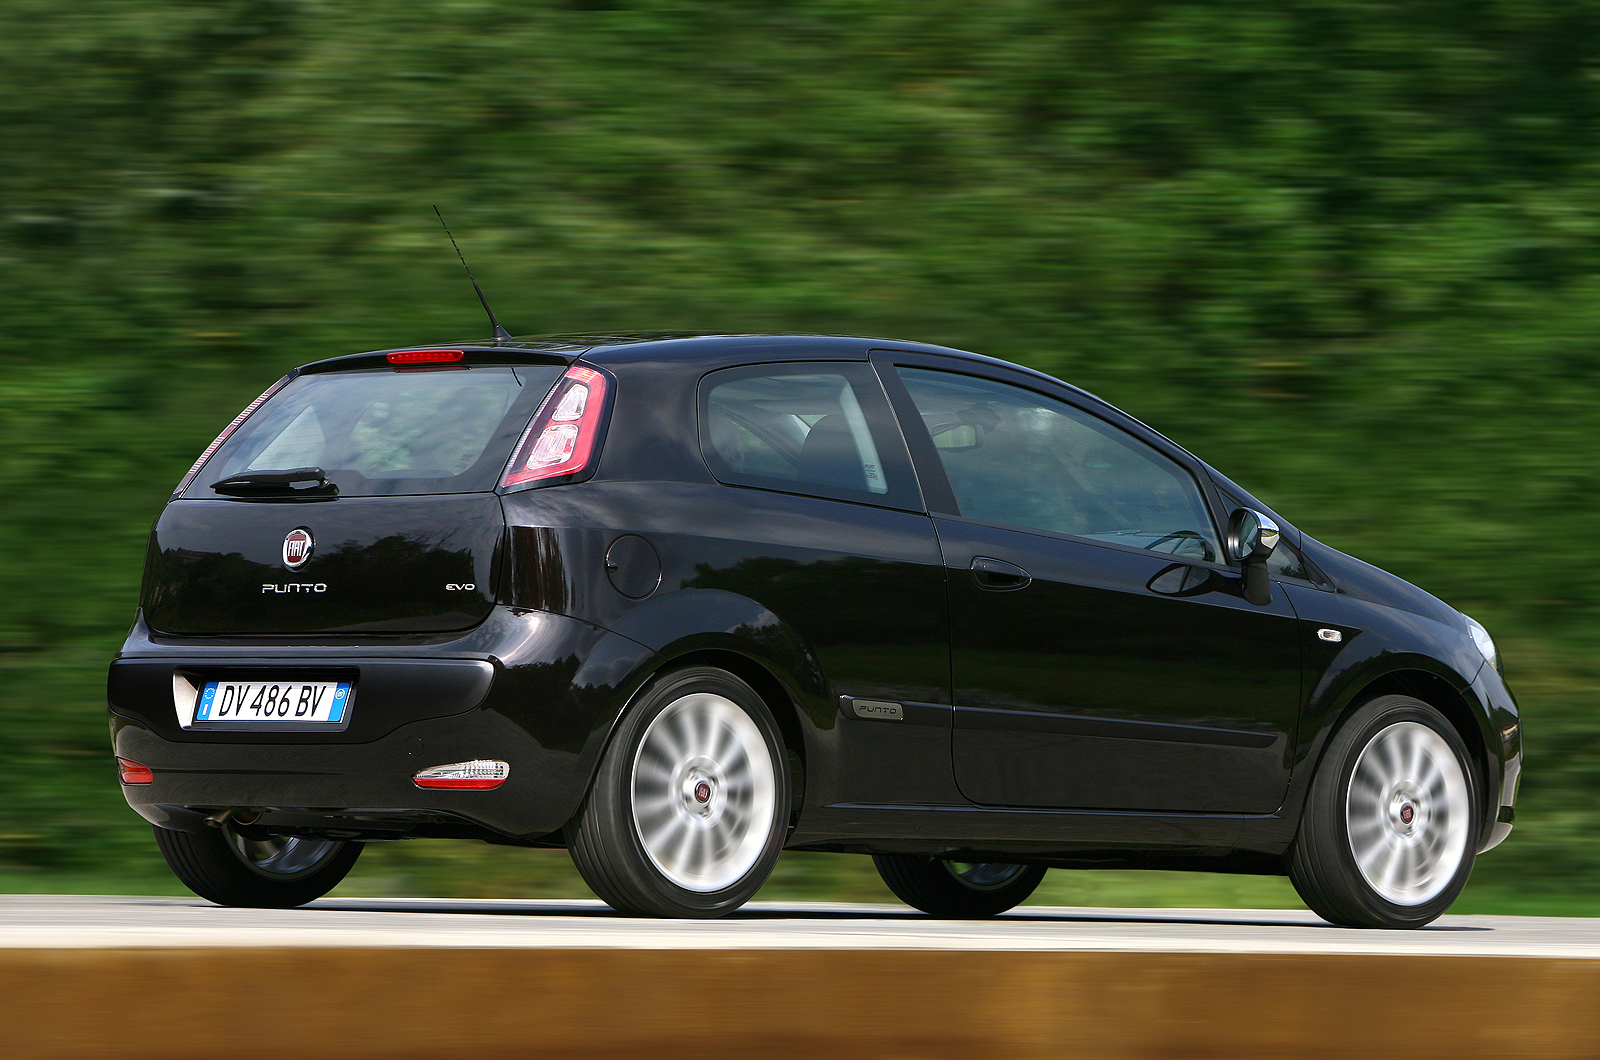 Fiat Punto Evo 1.4 Multiair | Autocar